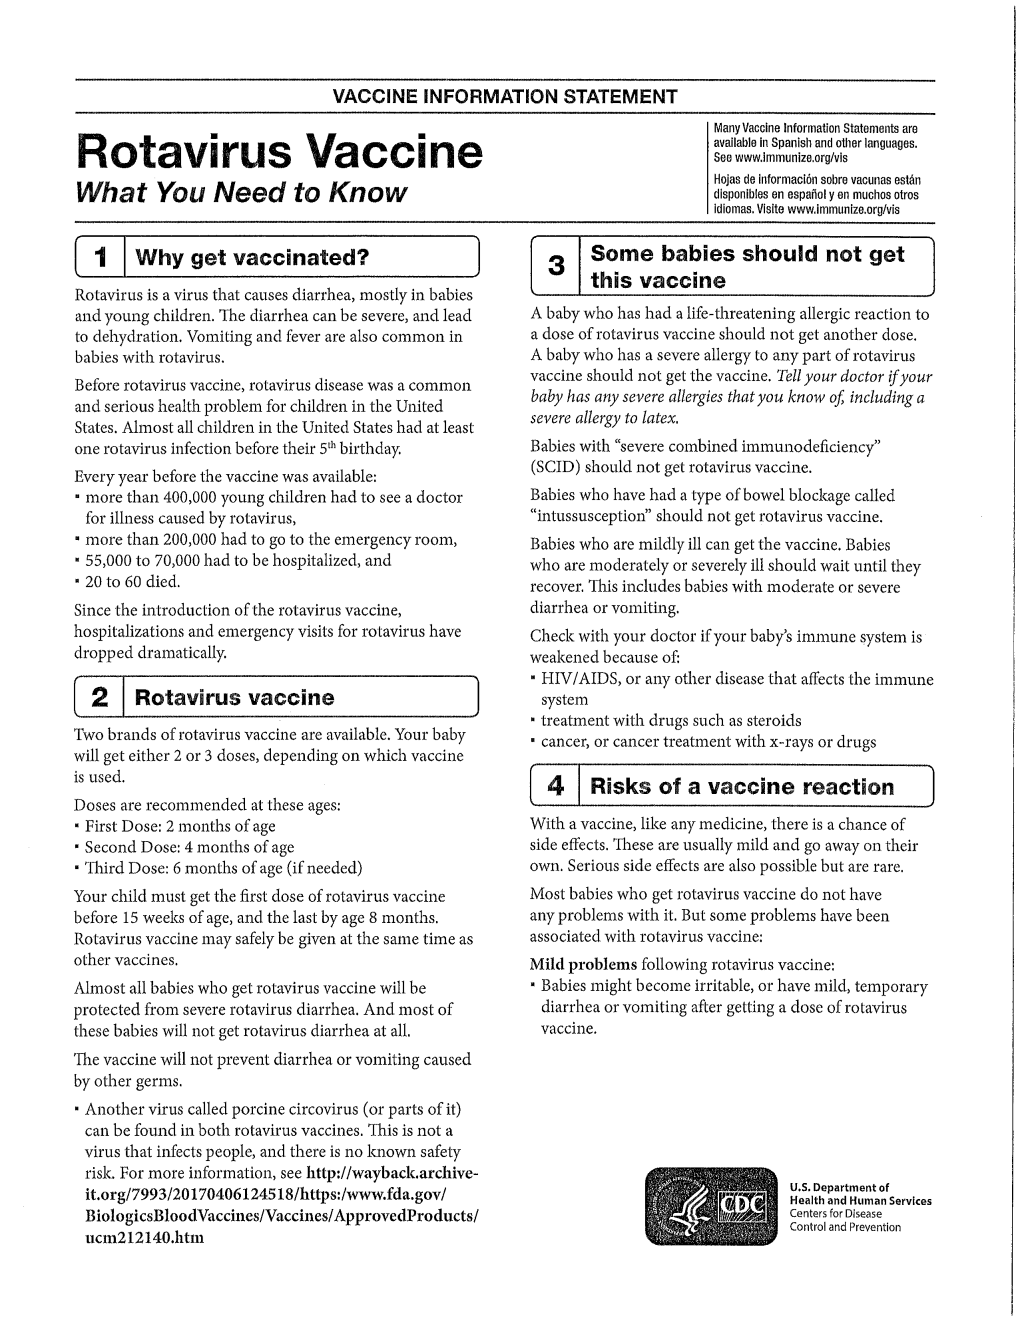 Rotavirus Vaccine See Hojas De Informacion Sobre Vacunas Estdn What You Need to Know Disponibles En Espanol Y En Muchos Otros Idiomas